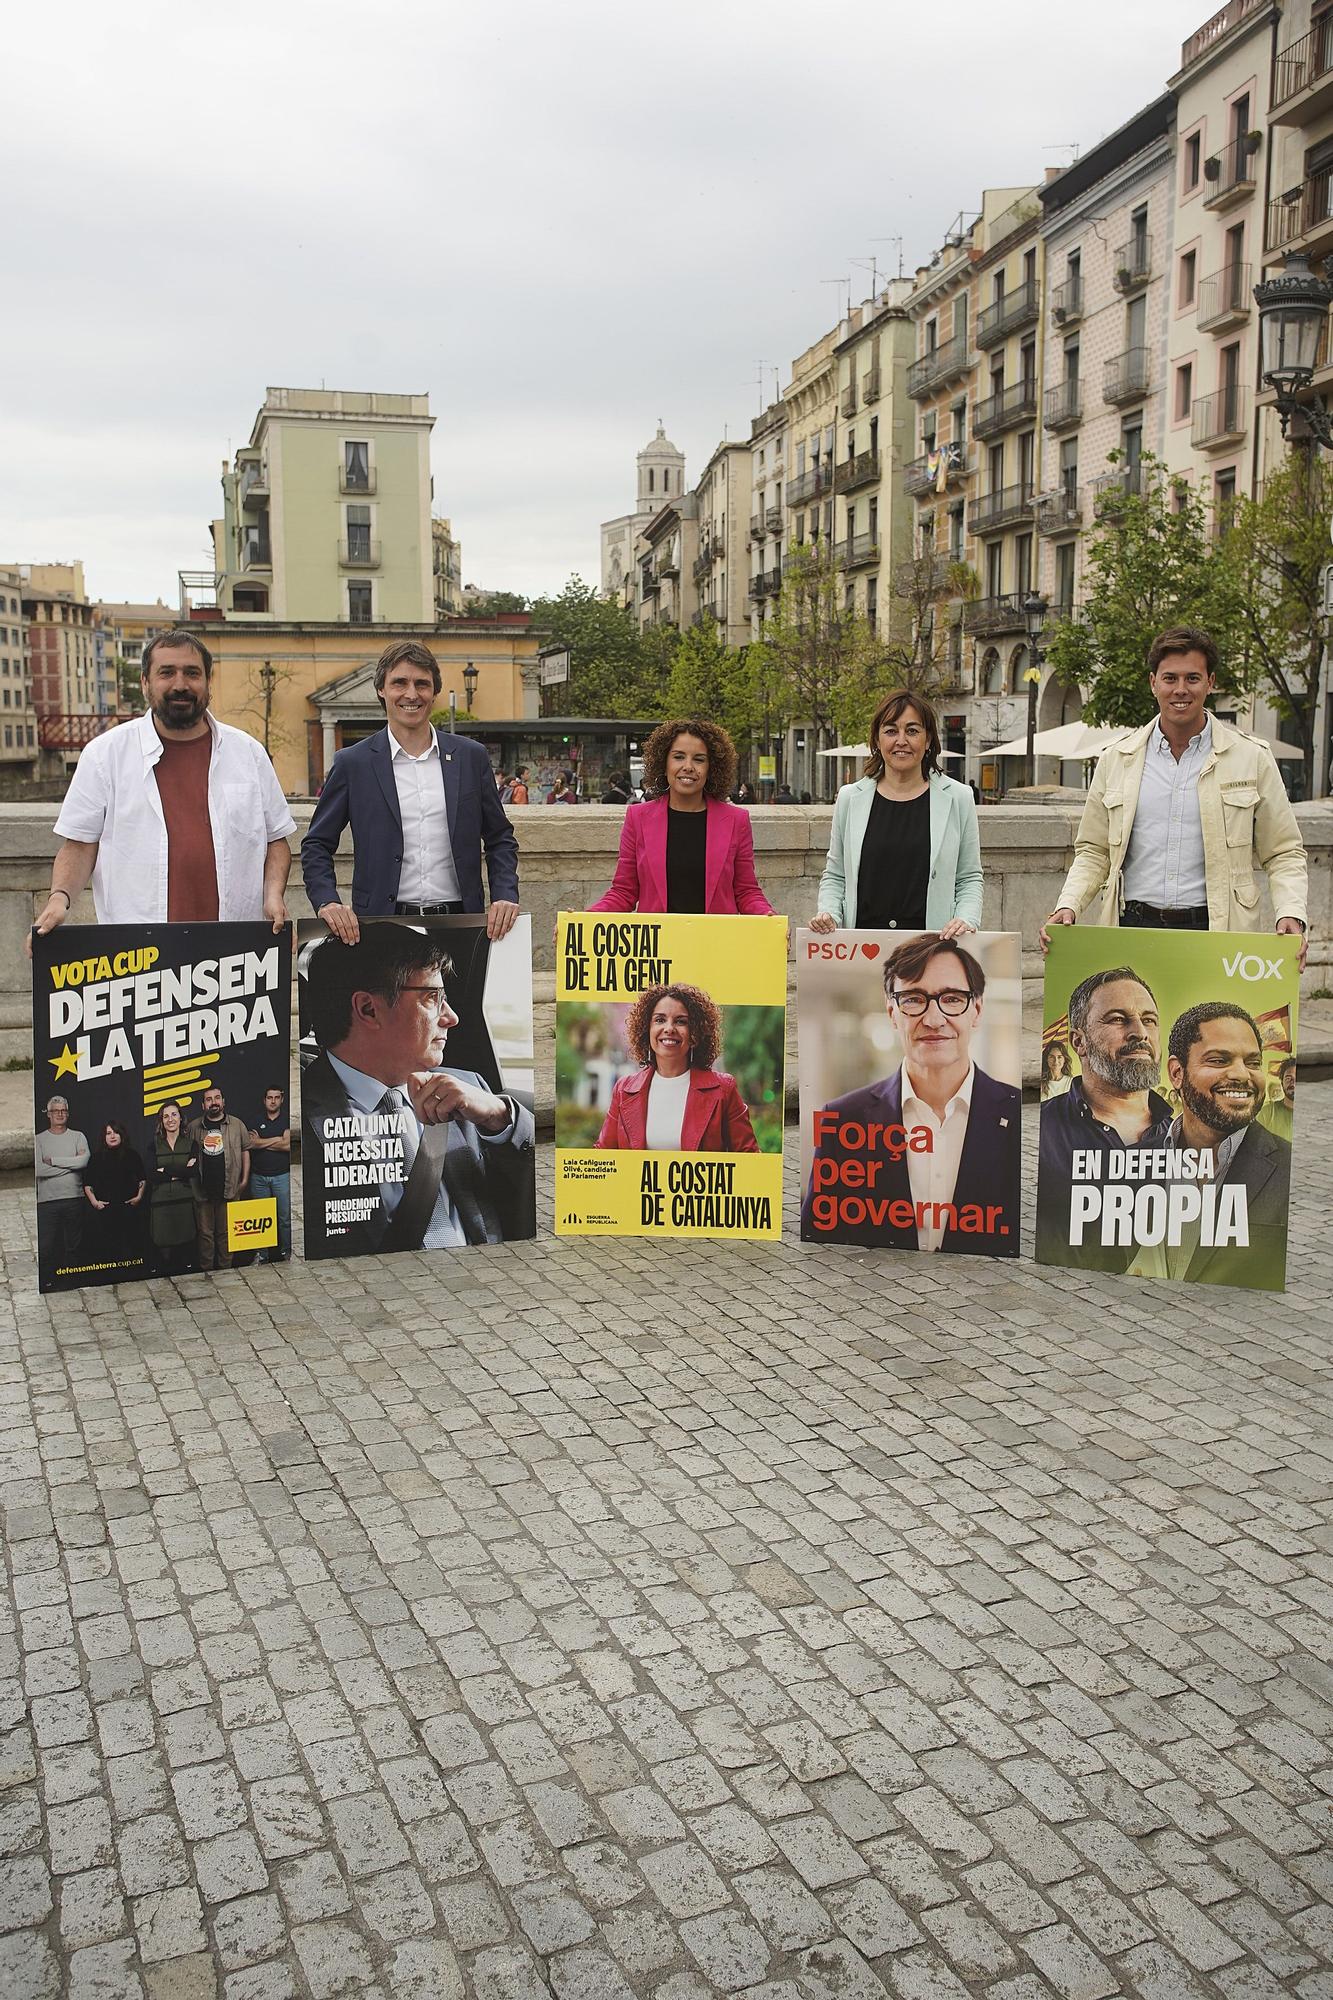 Els caps de llista per Girona a les eleccions al parlament